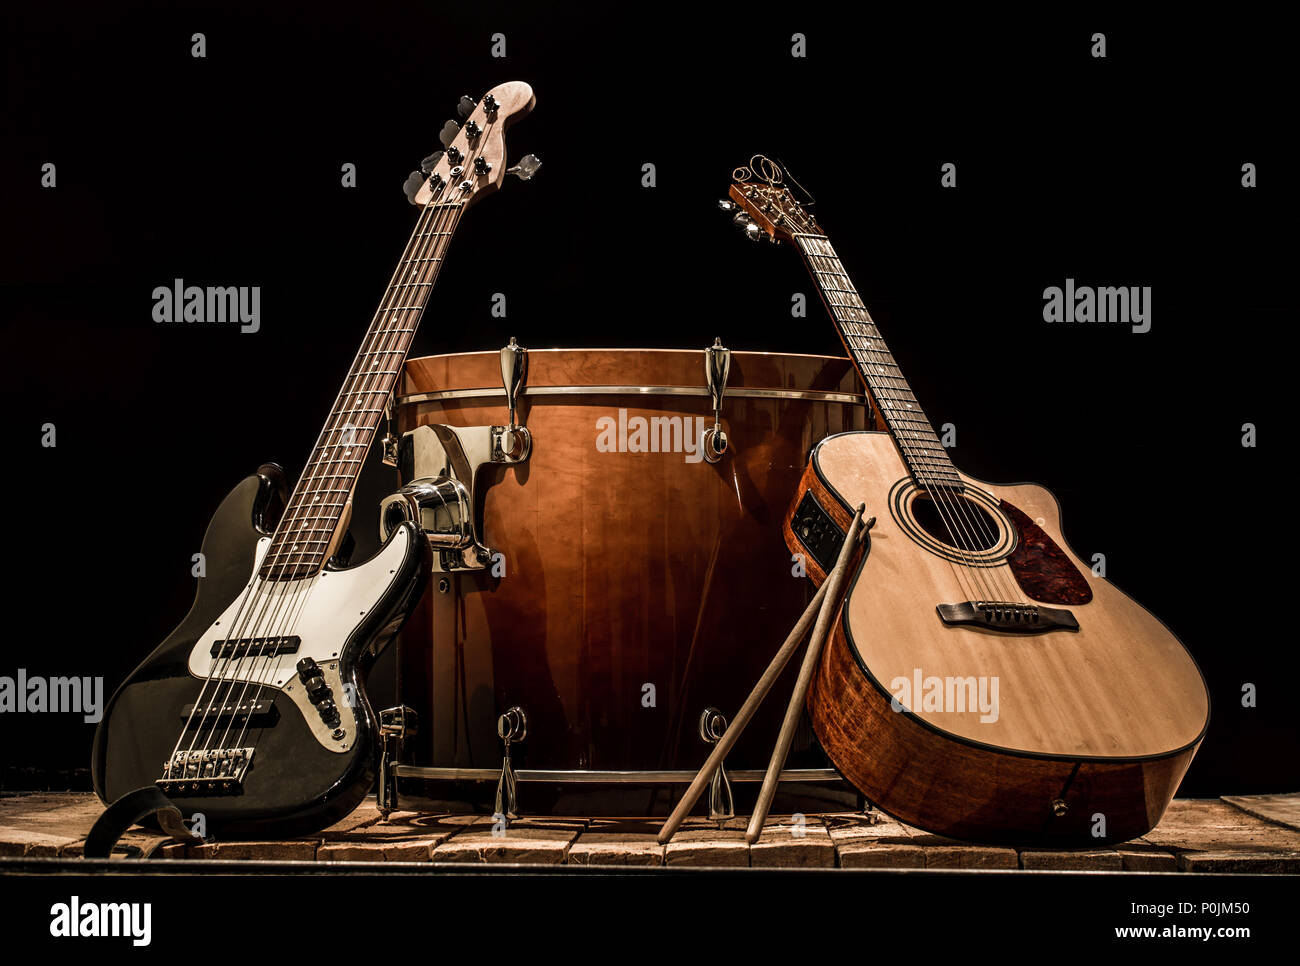 Instruments de musique, bass drum canon guitare acoustique et guitare basse  sur fond noir Photo Stock - Alamy